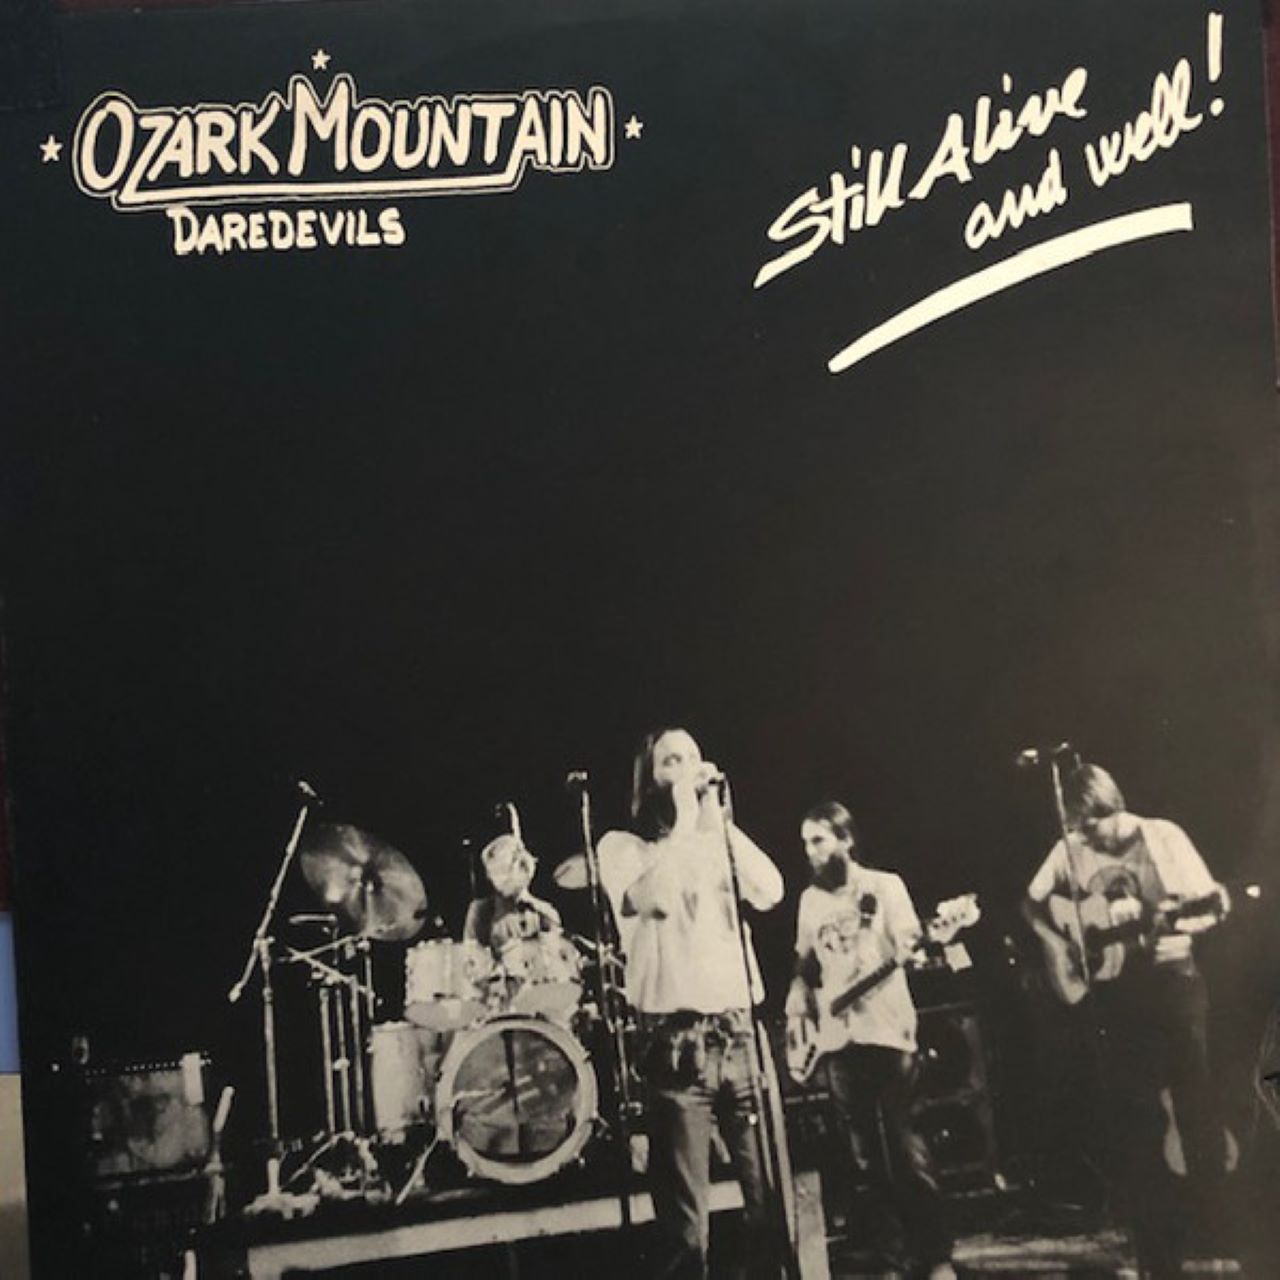 Ozark Mountain Daredevils - Still Alive And Well cover album